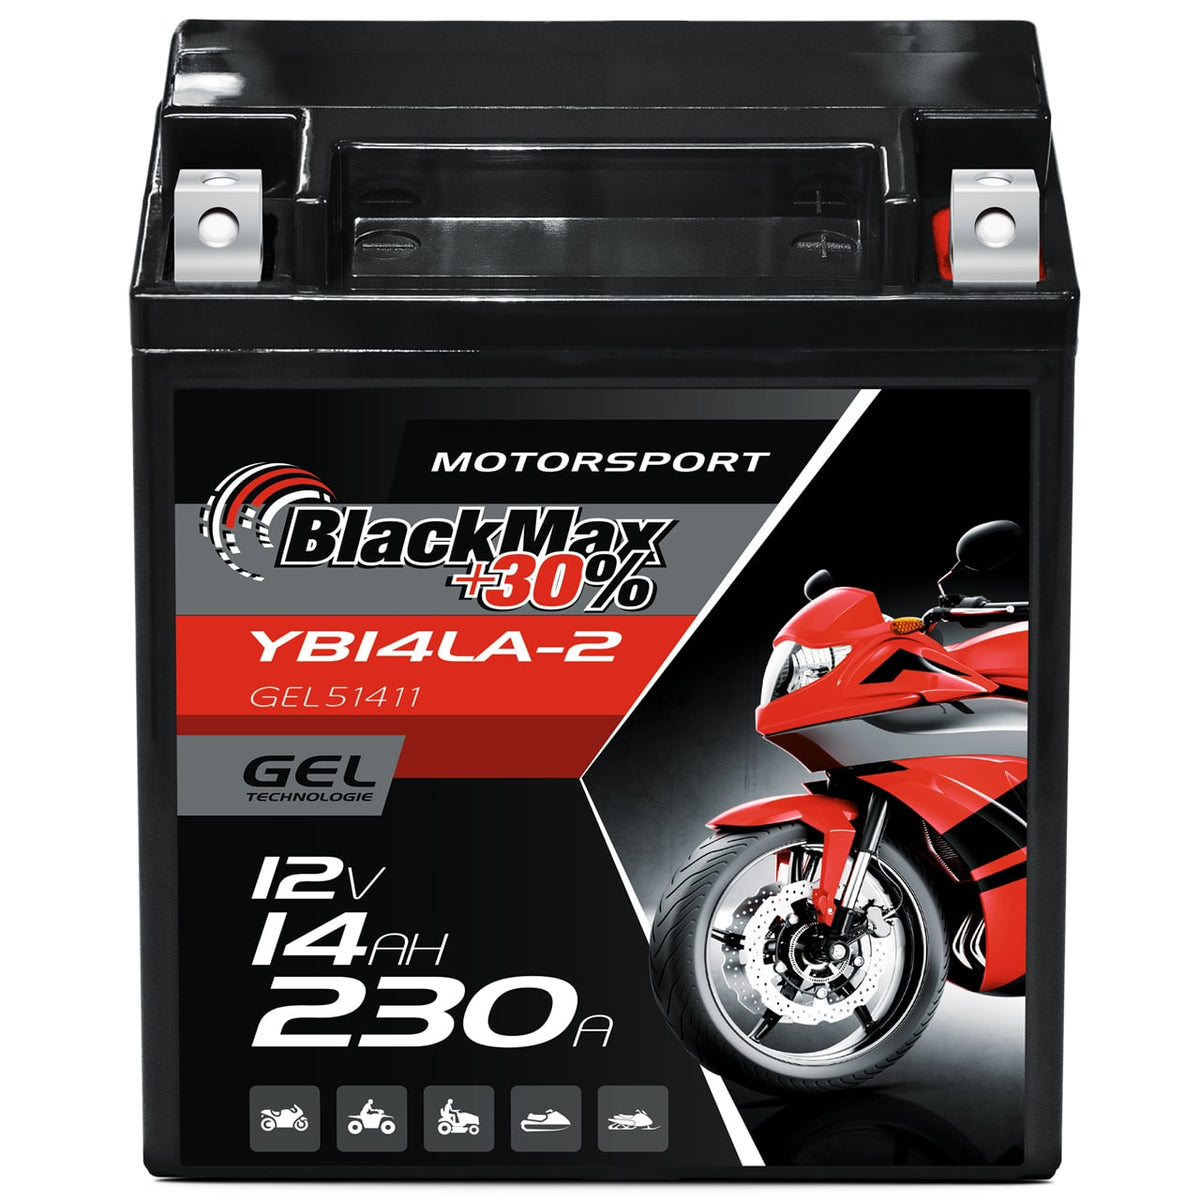 BlackMax +30% Motorsport YB14LA-2 51411 GEL 12V 14Ah 230A/EN